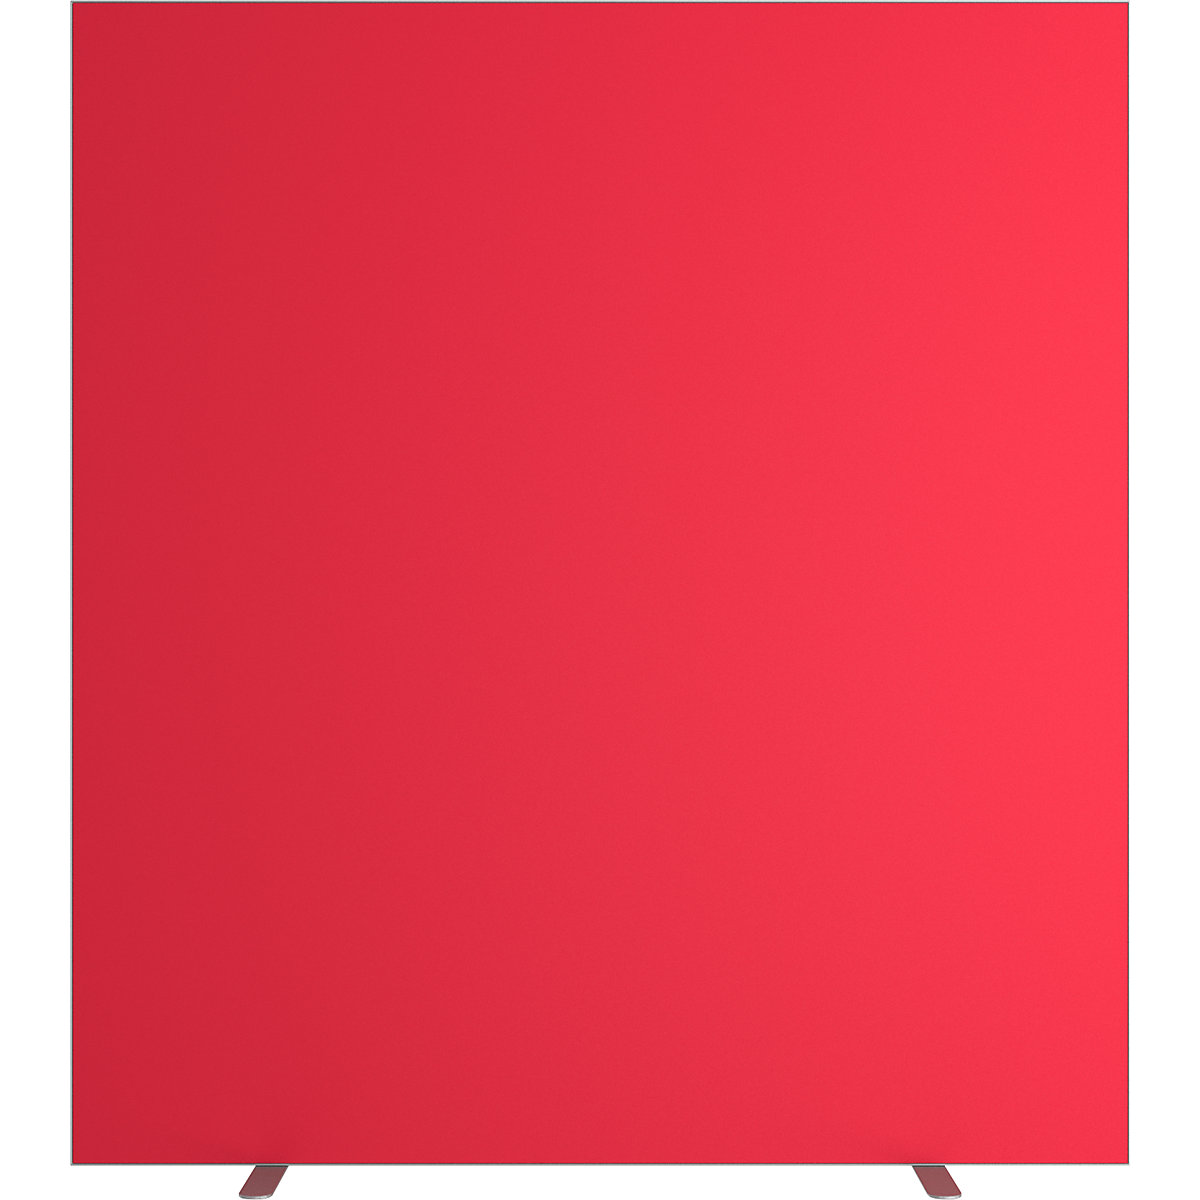 Predelna stena easyScreen, enobarvna izvedba, z zvočno izolacijo, rdeče barve, širina 1600 mm